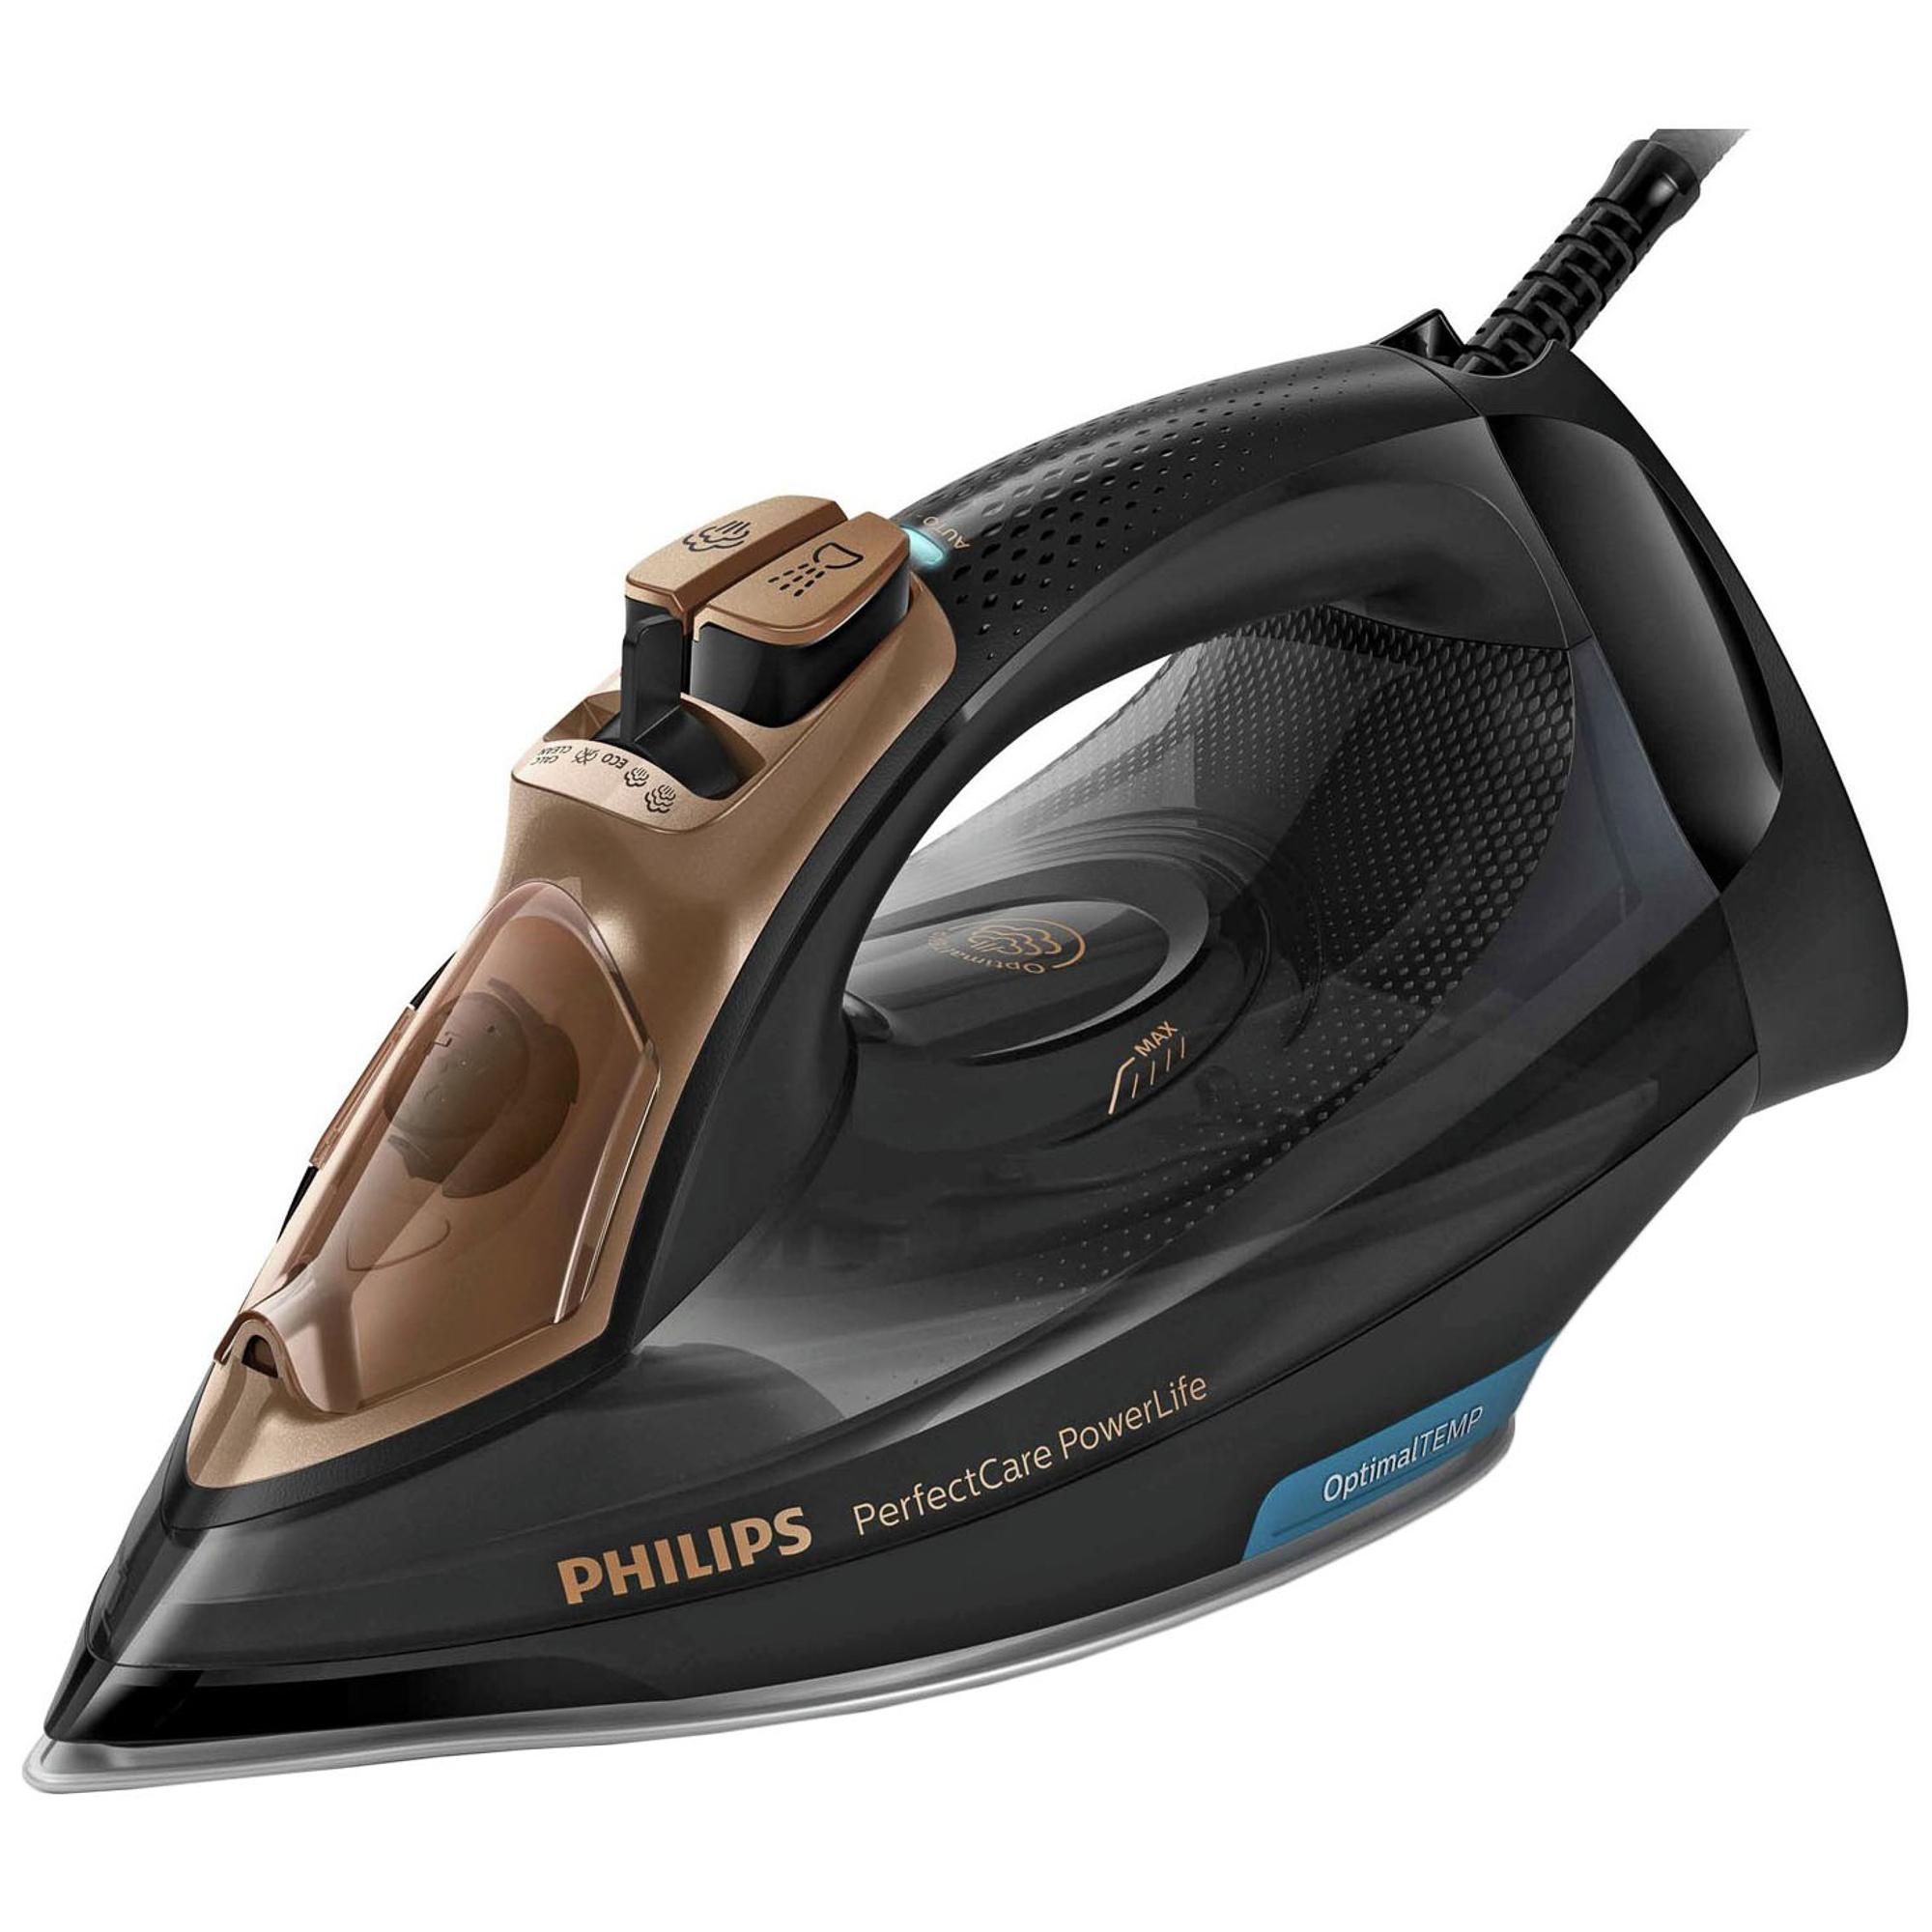 Какие утюги качественные. Утюг Philips gc3929/64. Утюг Philips PERFECTCARE. Утюг Philips PERFECTCARE POWERLIFE. Утюг Philips PERFECTCARE POWERLIFE 2400.